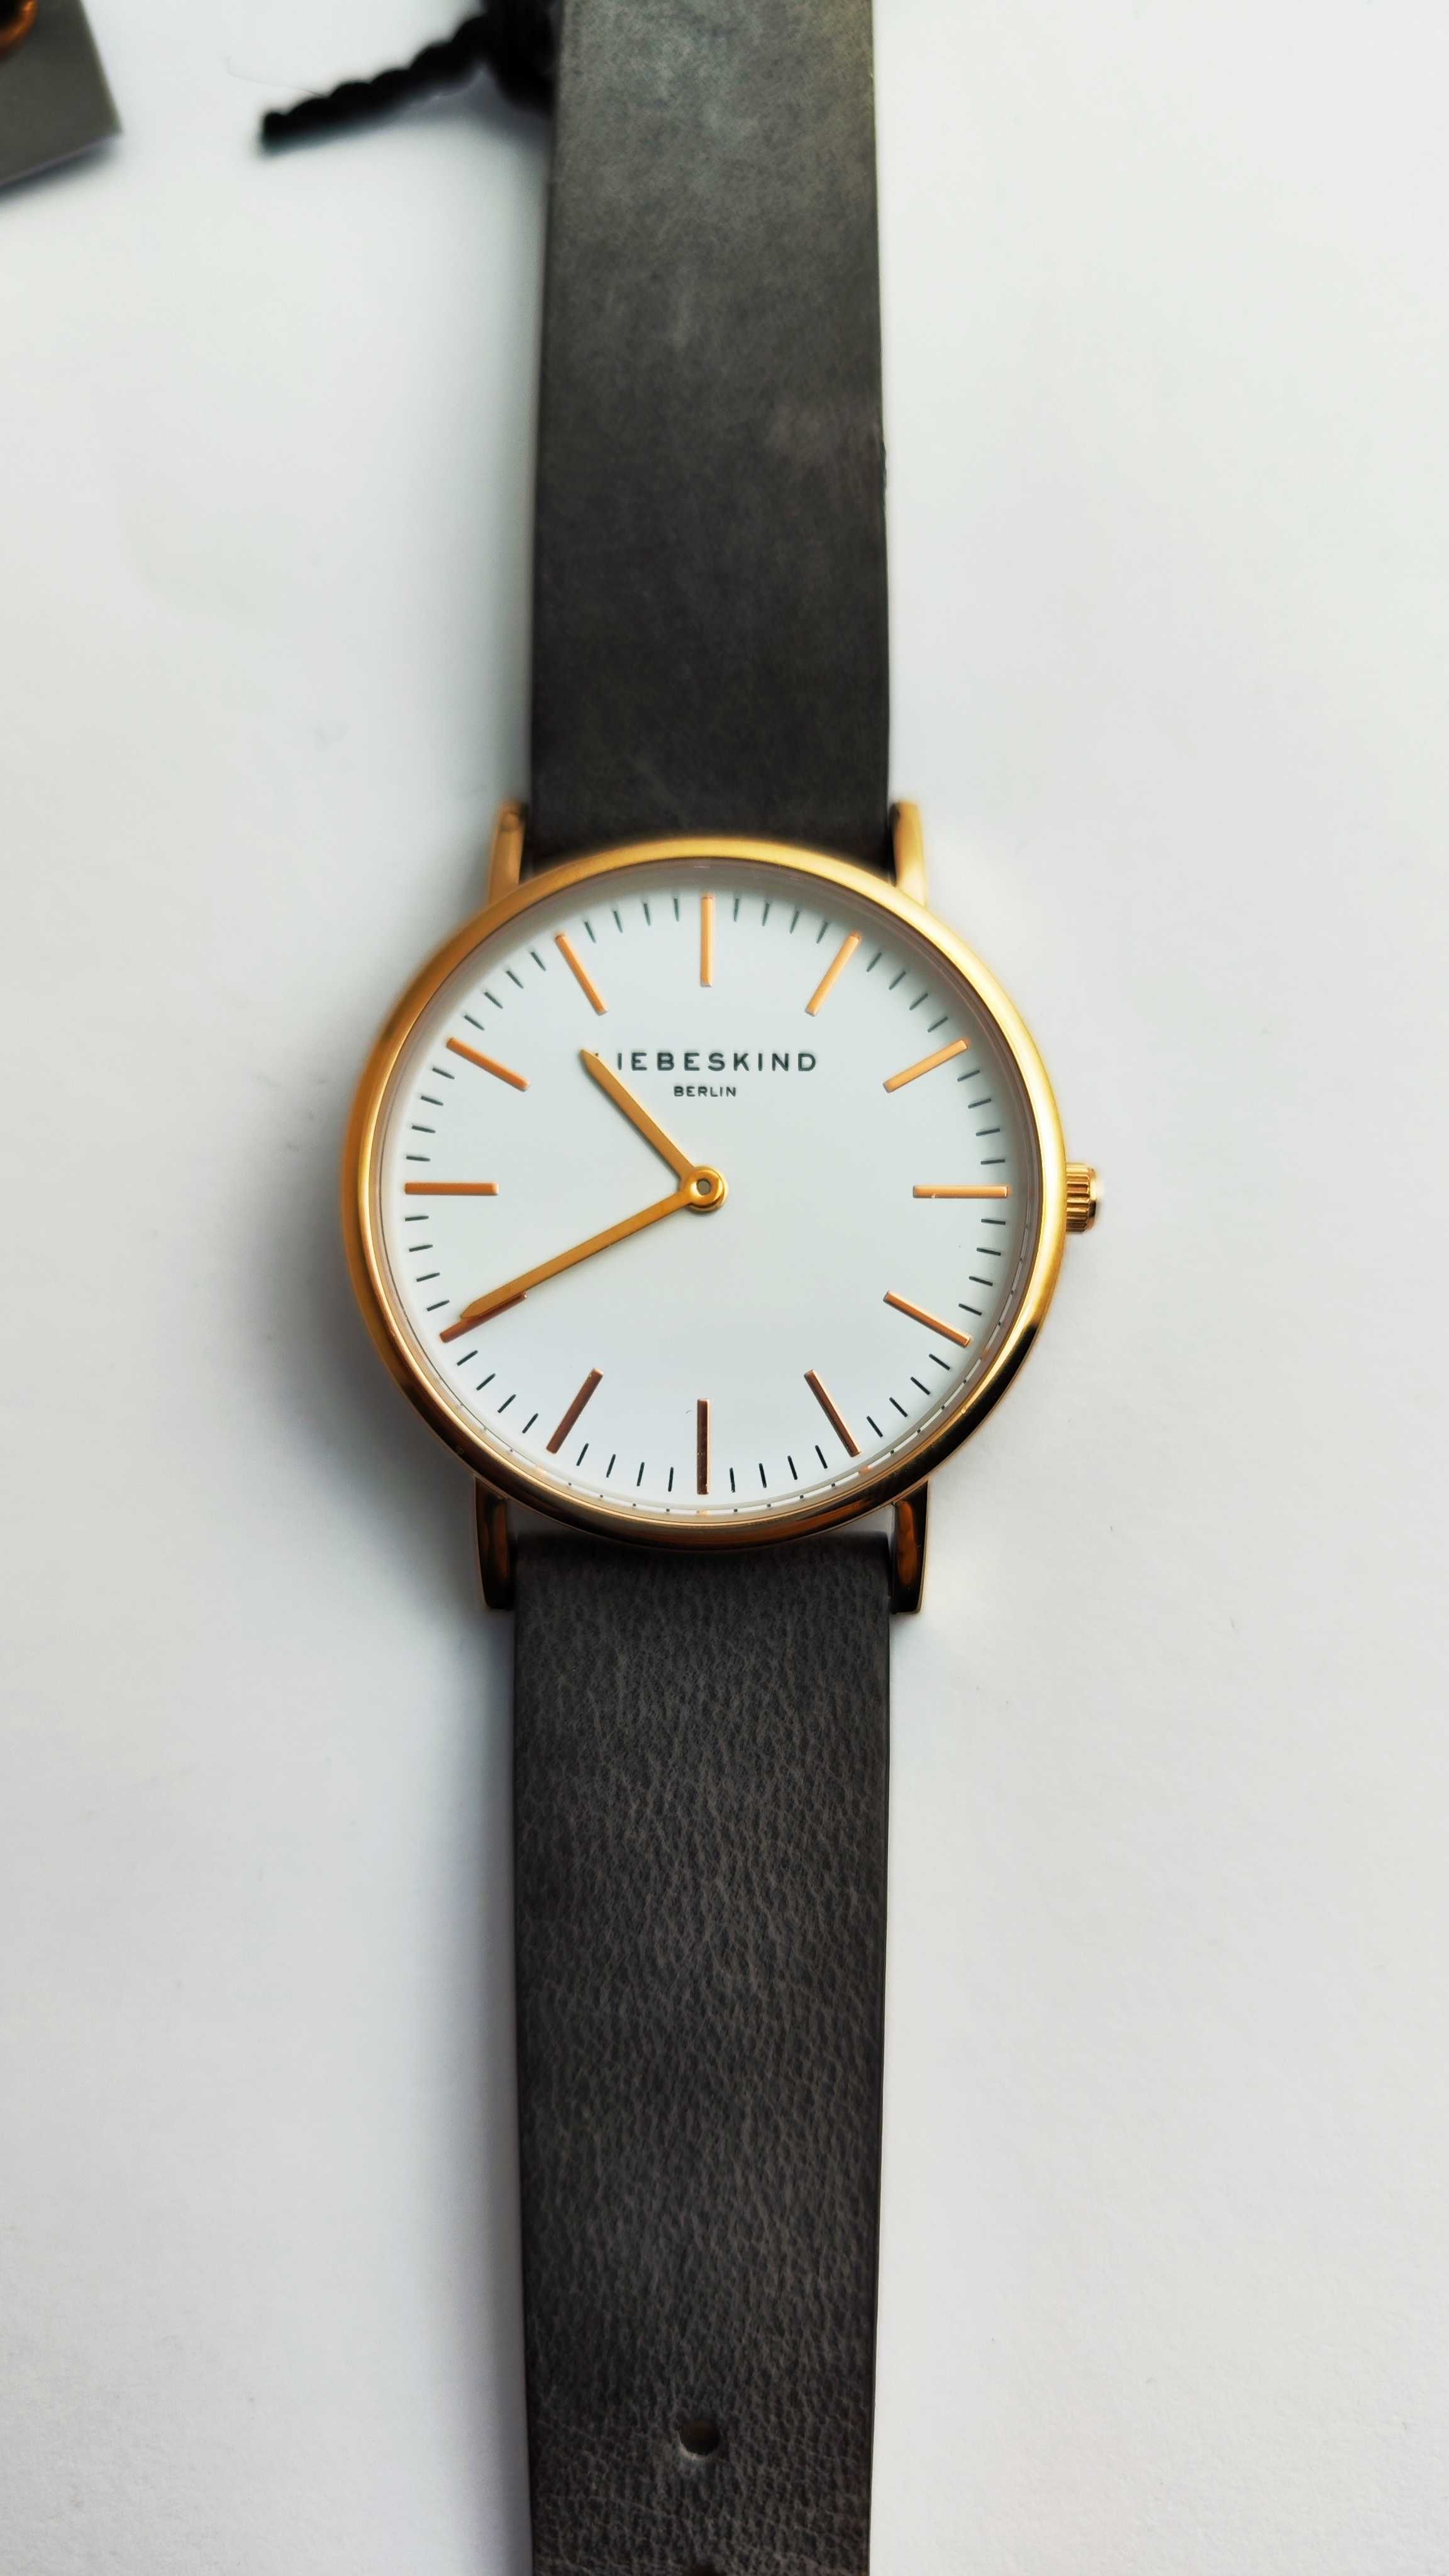 Liebeskind Berlin damski zegarek na rękę ze skórzanym paskiem (E34)